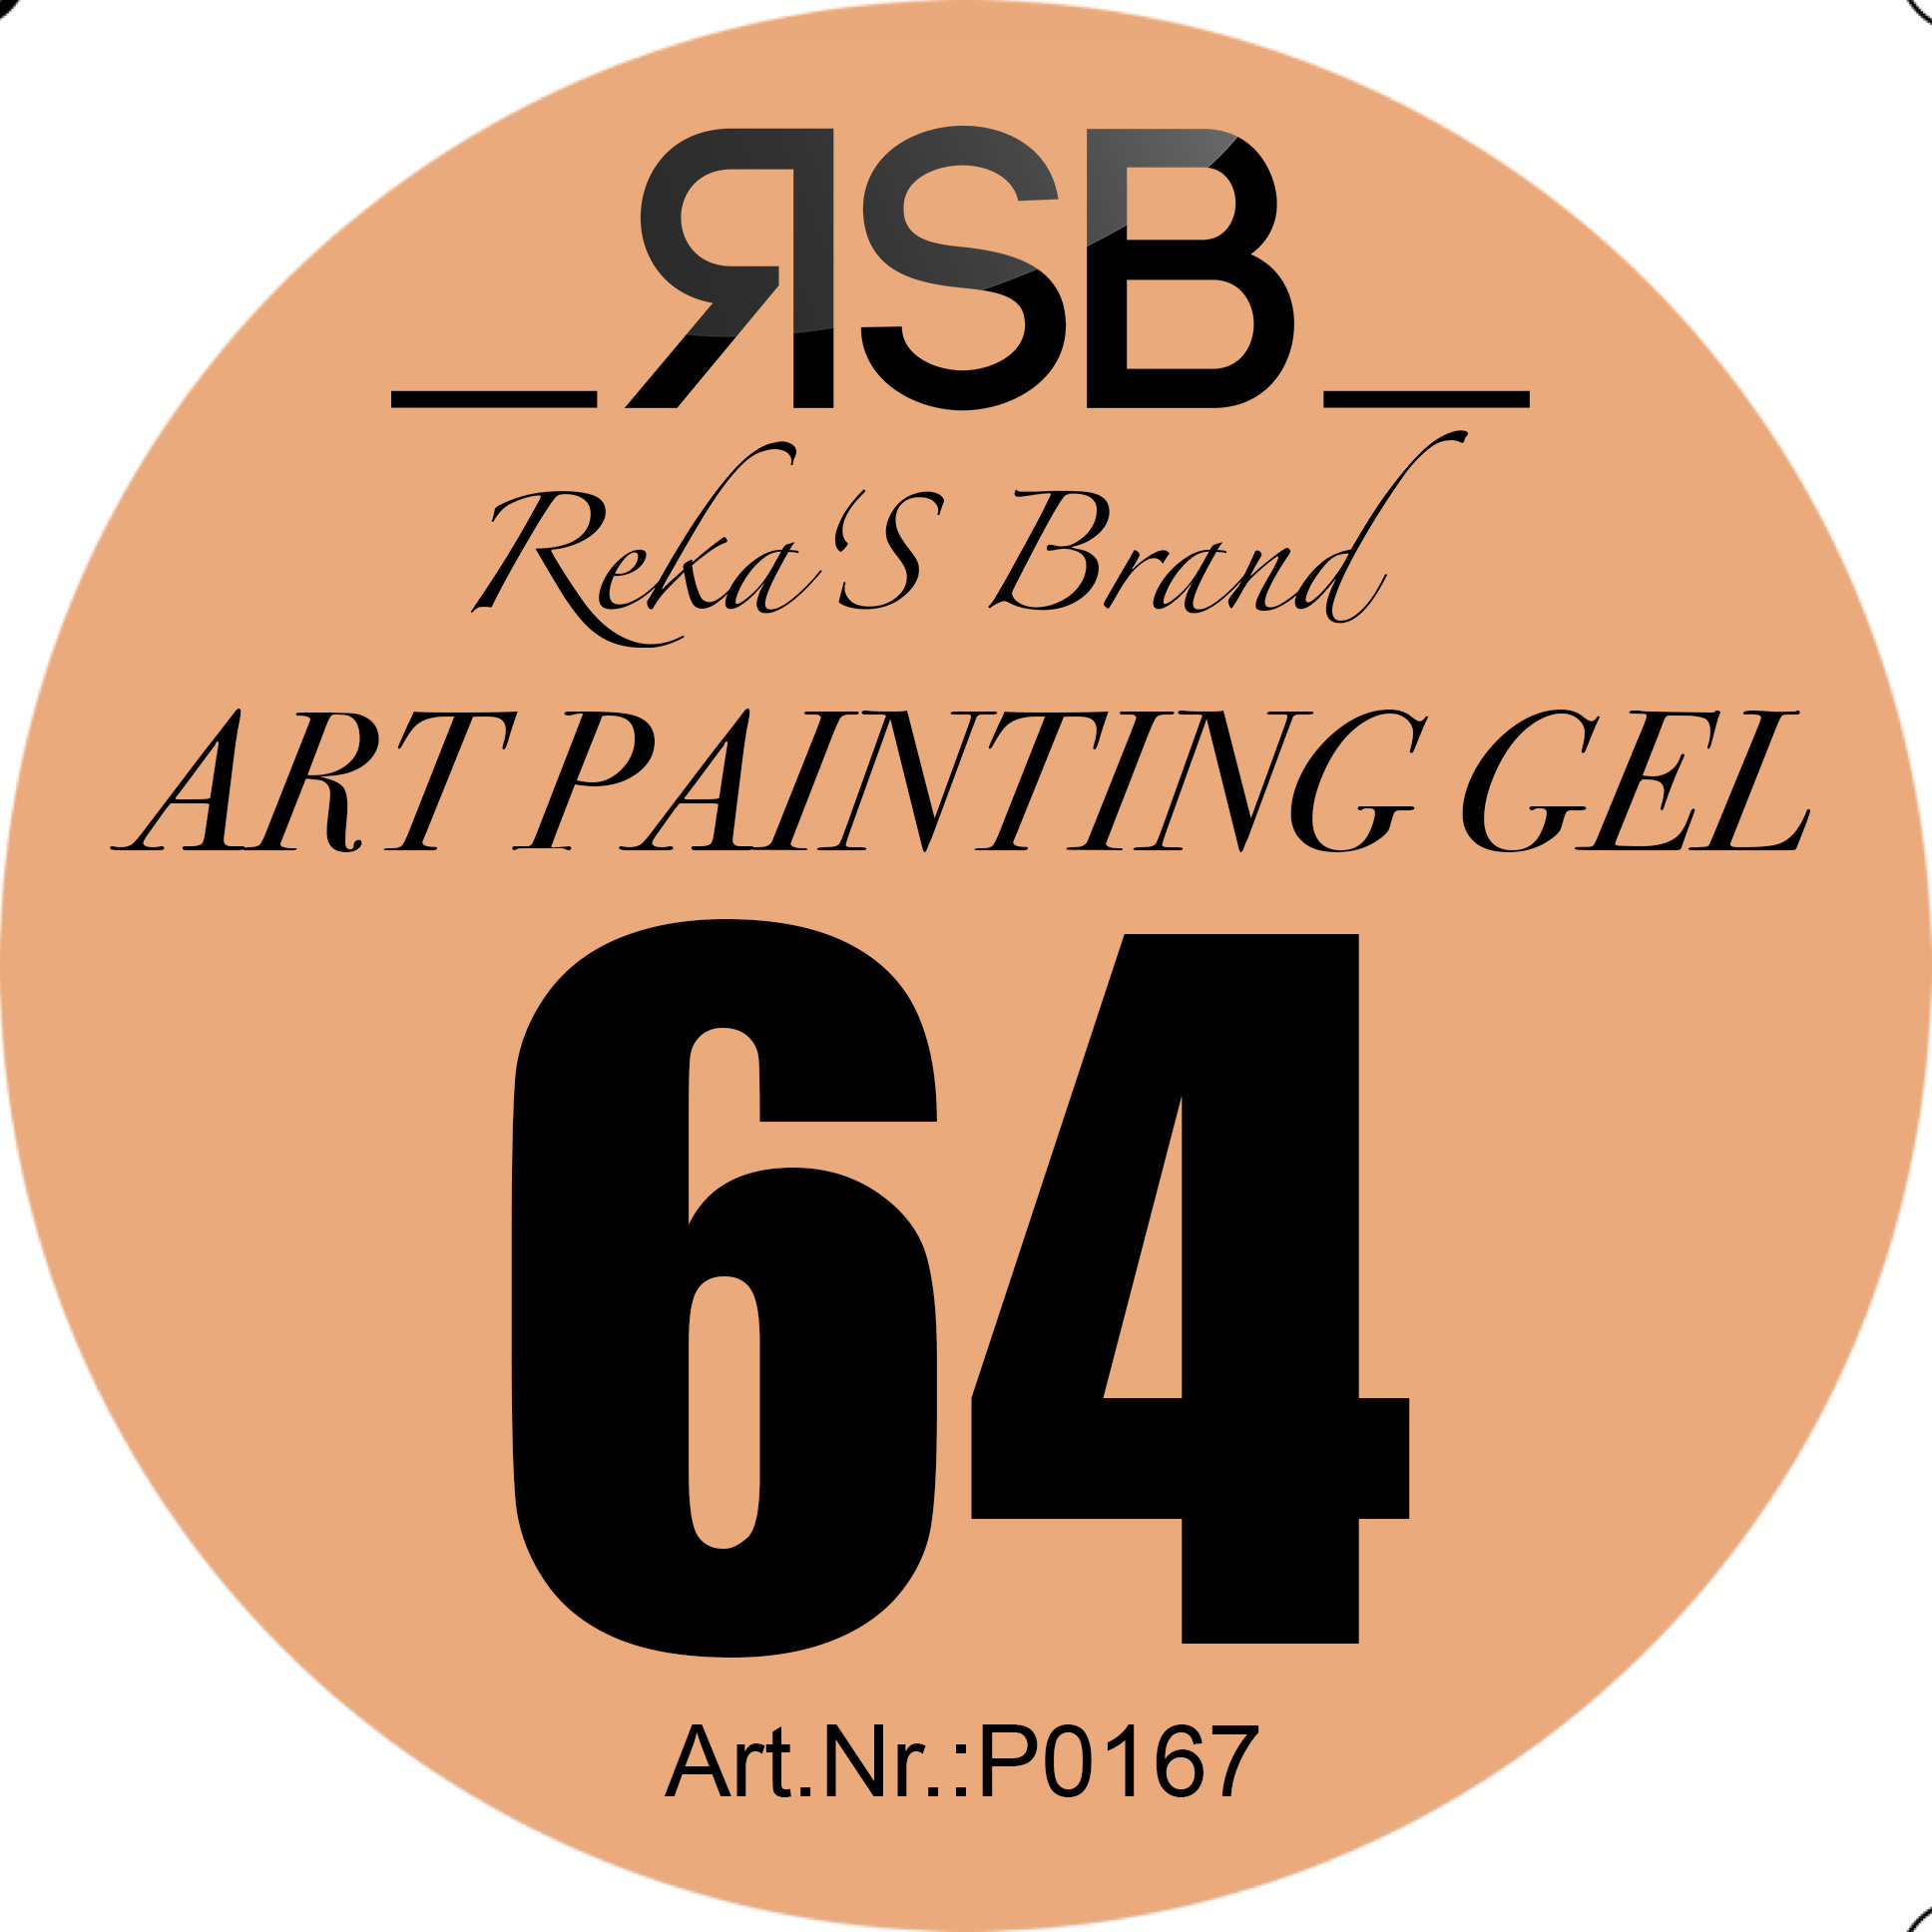 ART PAINTING GEL 64